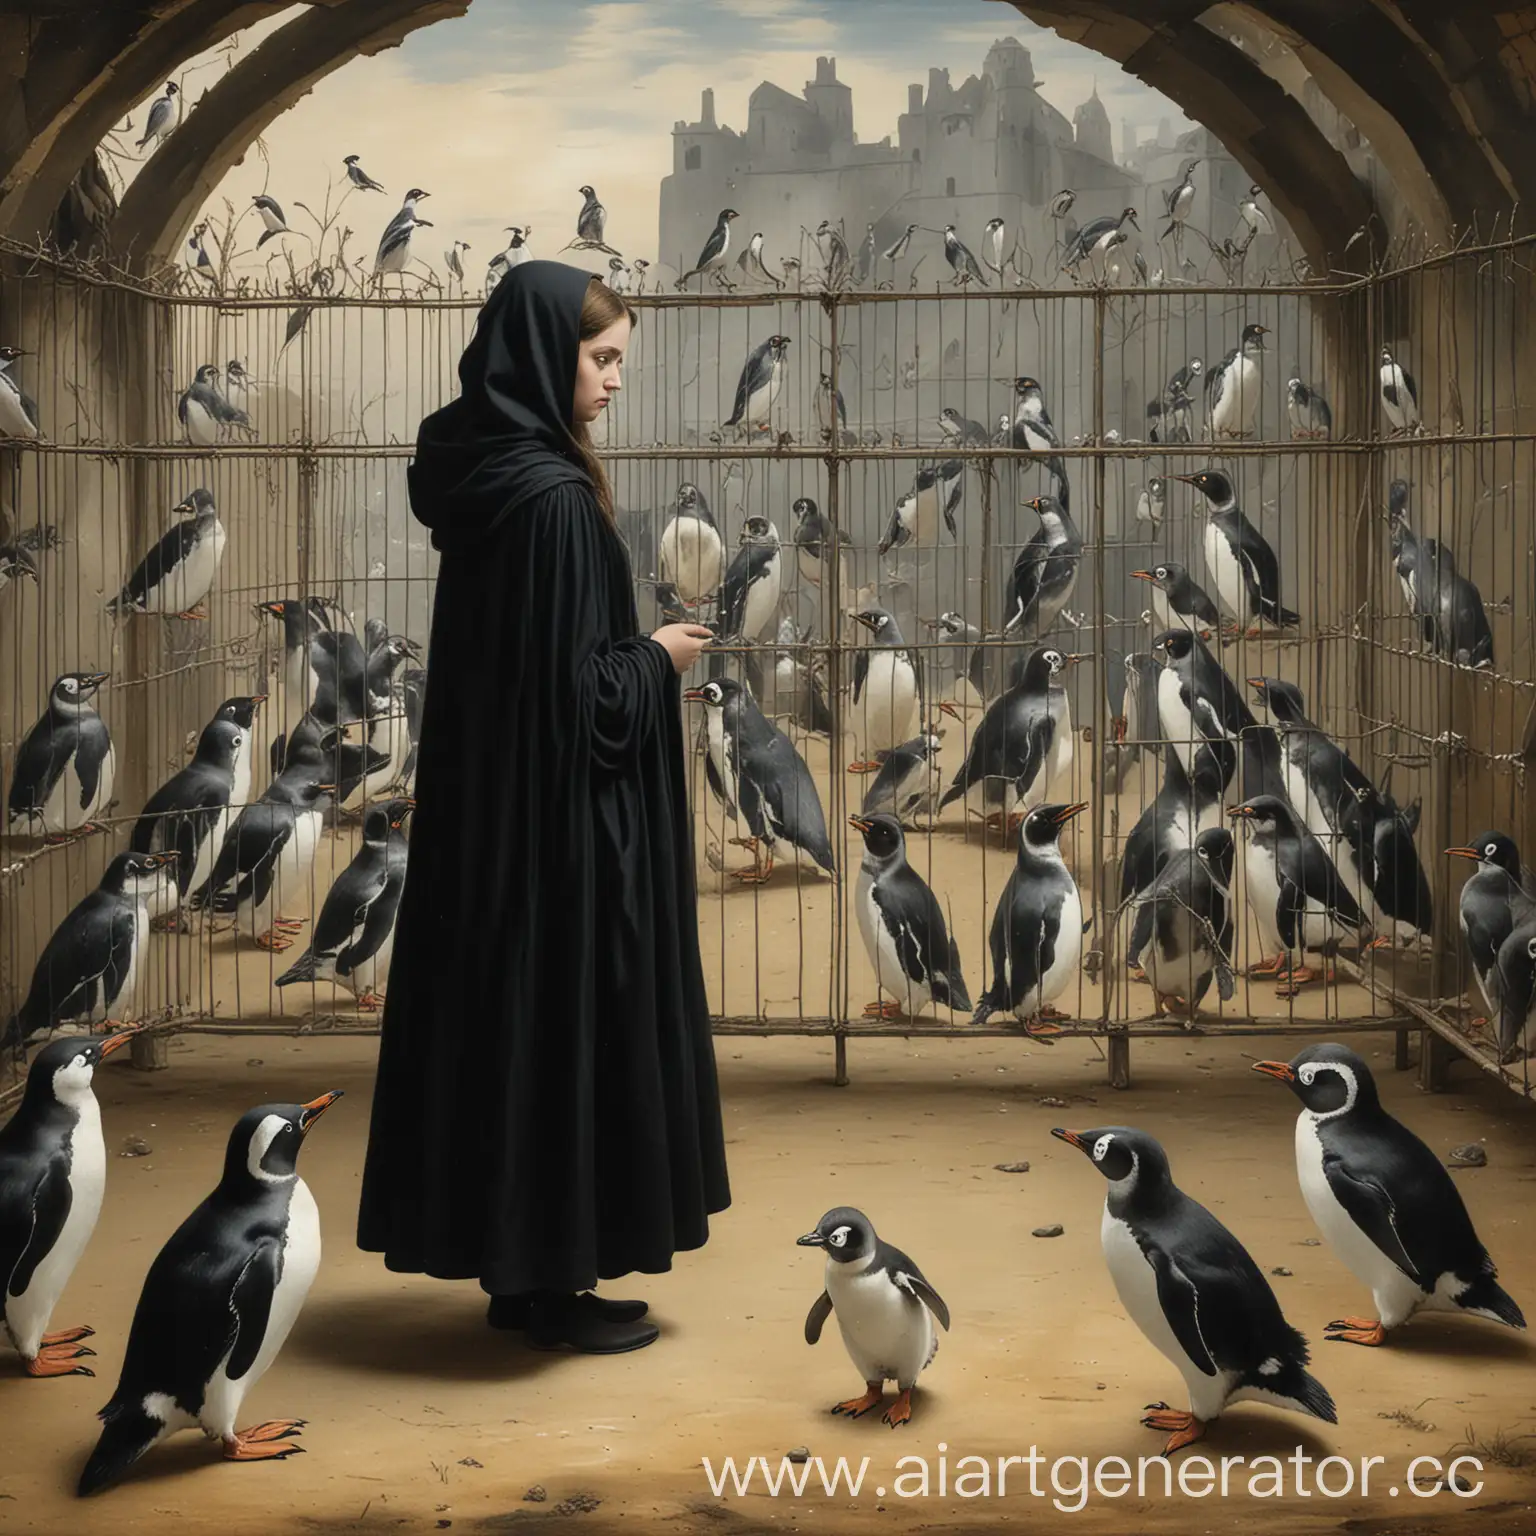 картина эпохи средневековья, на которой девушка в черном плаще смотрит на пингвинов в вольере